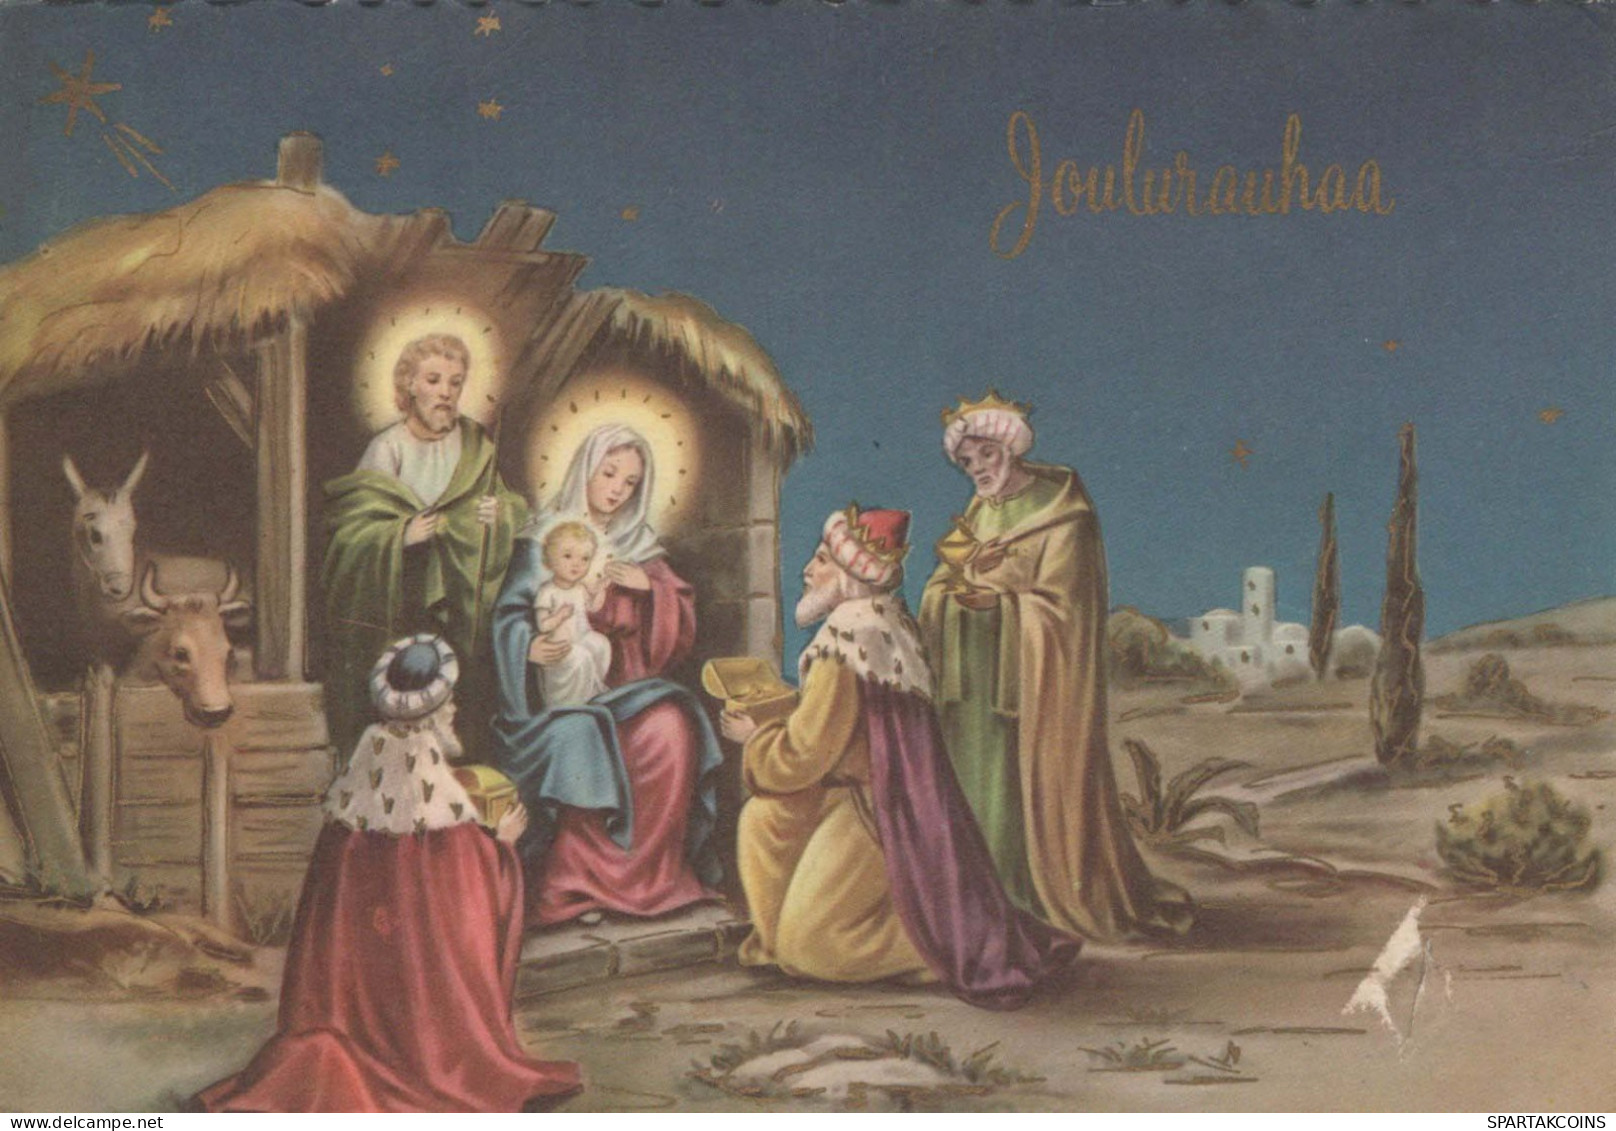 Jungfrau Maria Madonna Jesuskind Weihnachten Religion Vintage Ansichtskarte Postkarte CPSM #PBB617.DE - Vierge Marie & Madones